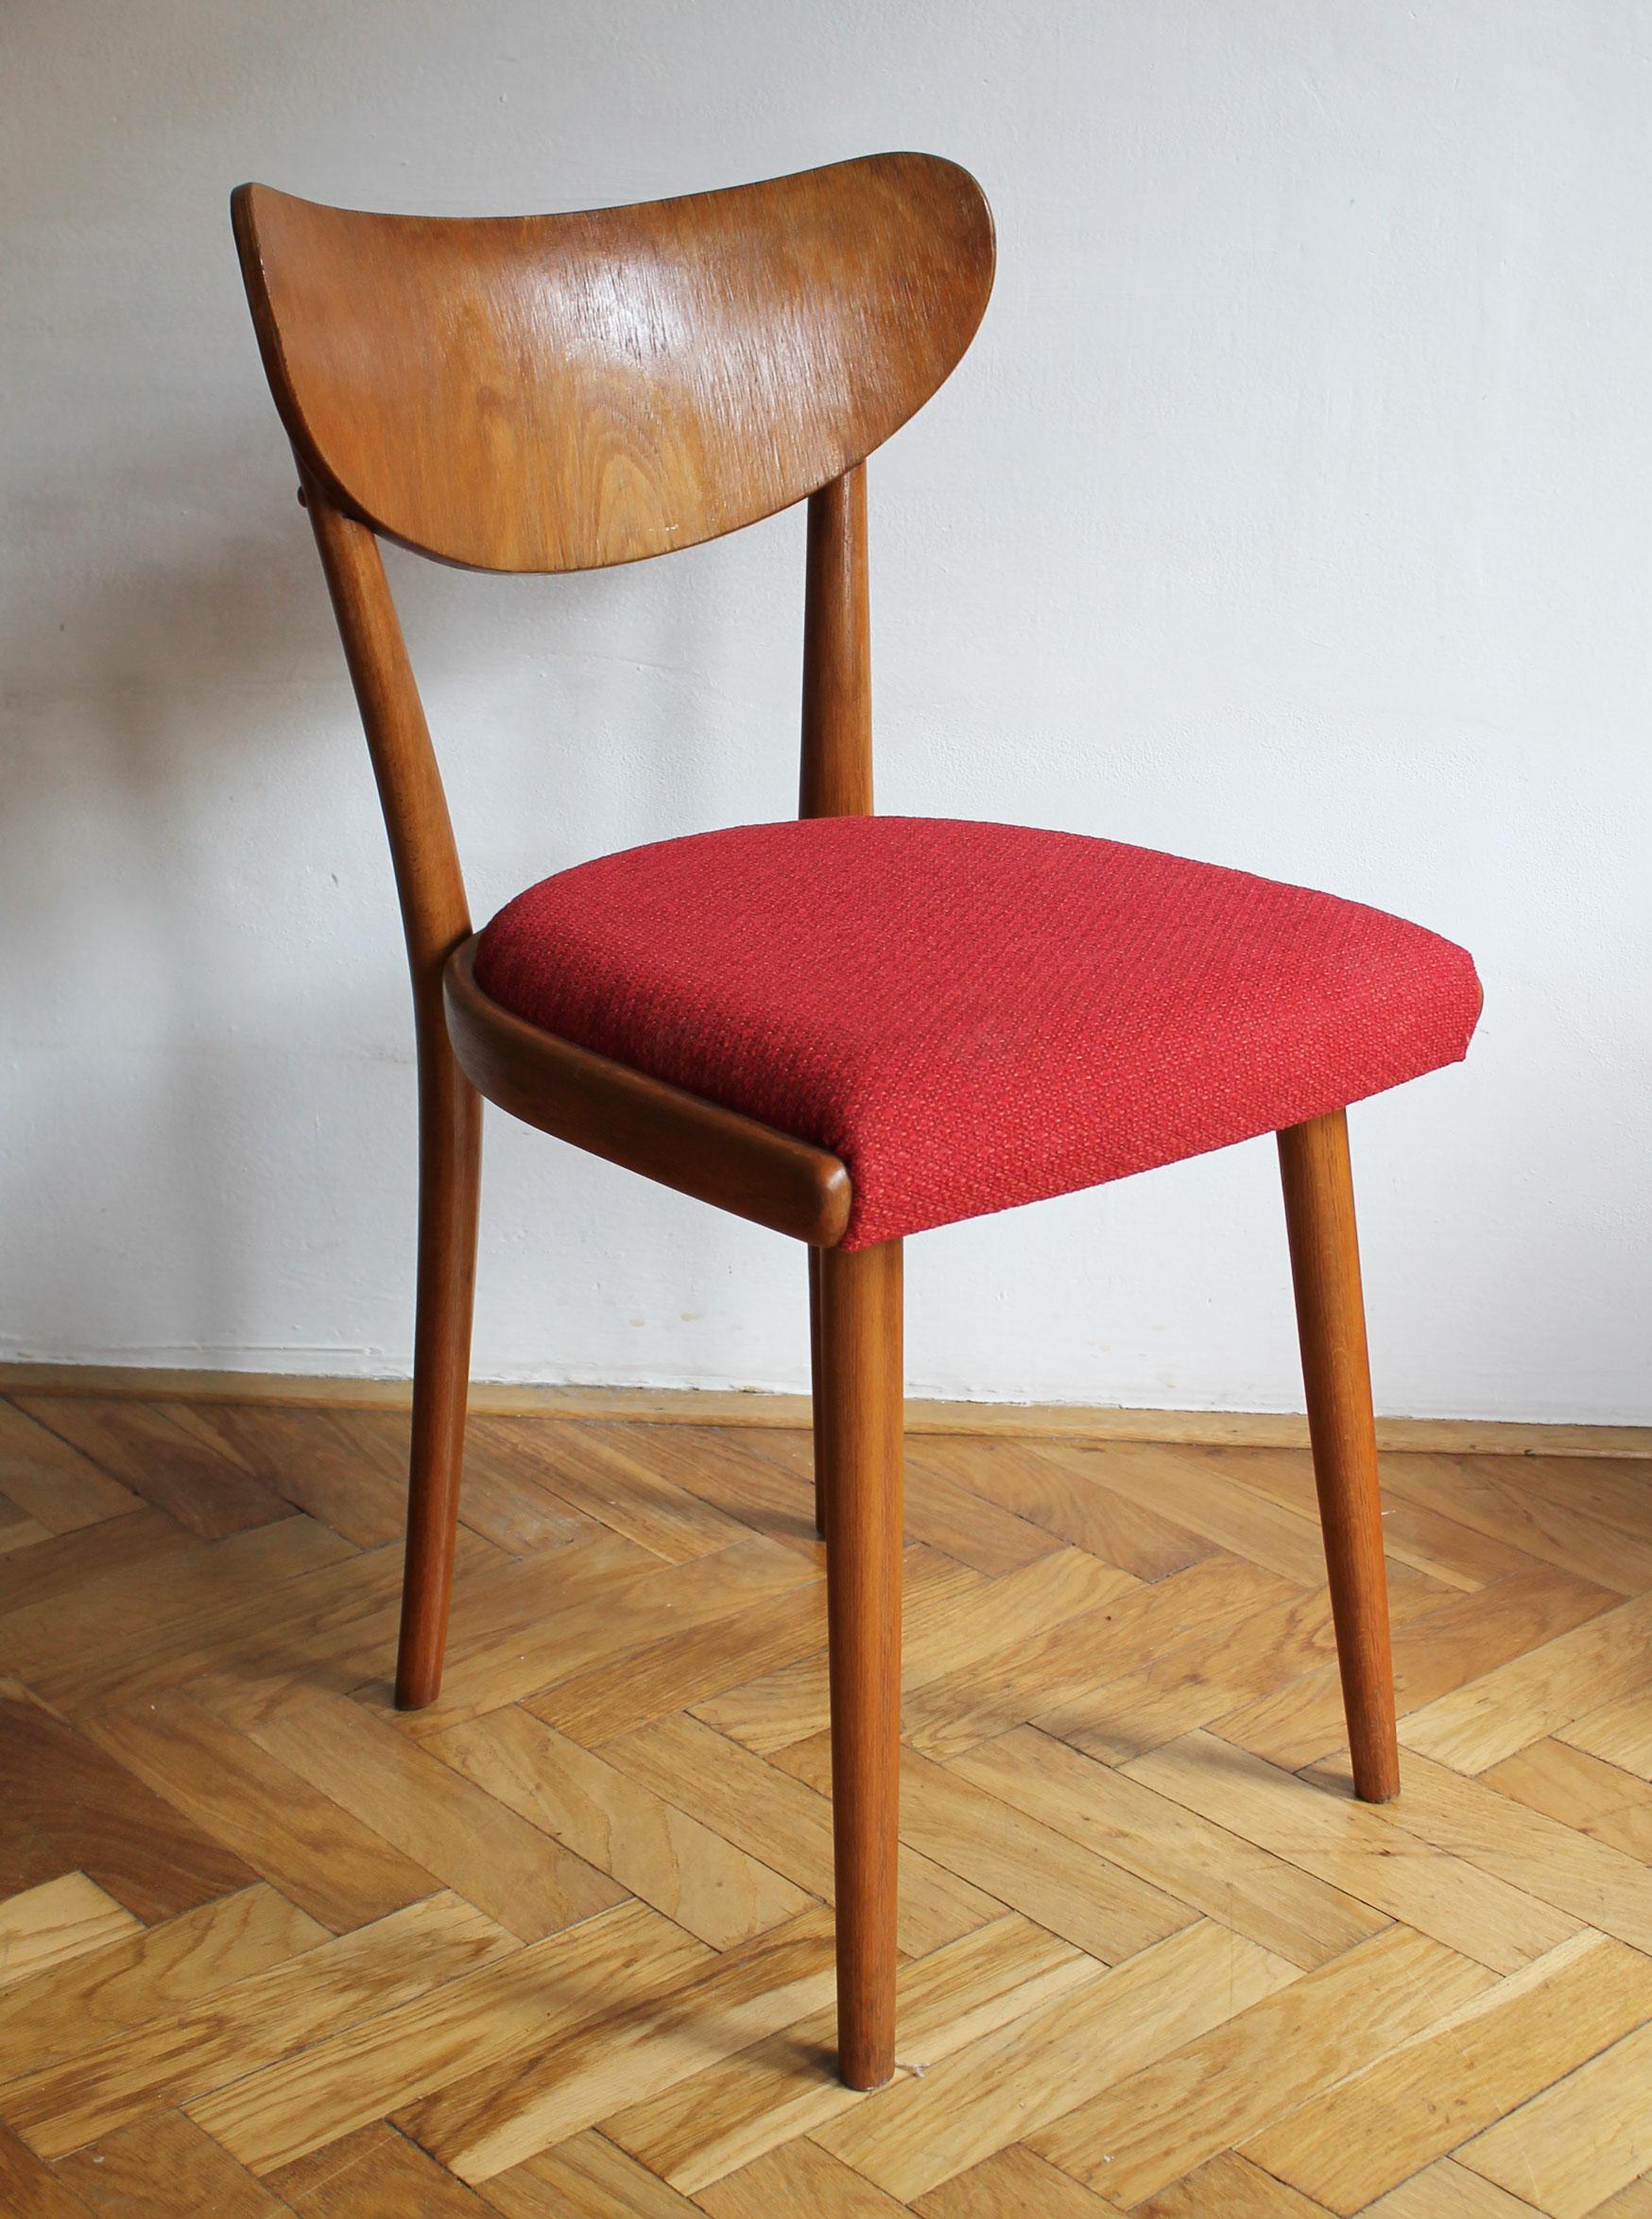 Ensemble de chaises de salle à manger modernes du milieu du siècle, conçues et produites par Thonet Furniture Company dans les années 1950 en Tchécoslovaquie. 

Ces chaises ont été conçues avec une nette influence du design scandinave. Leurs